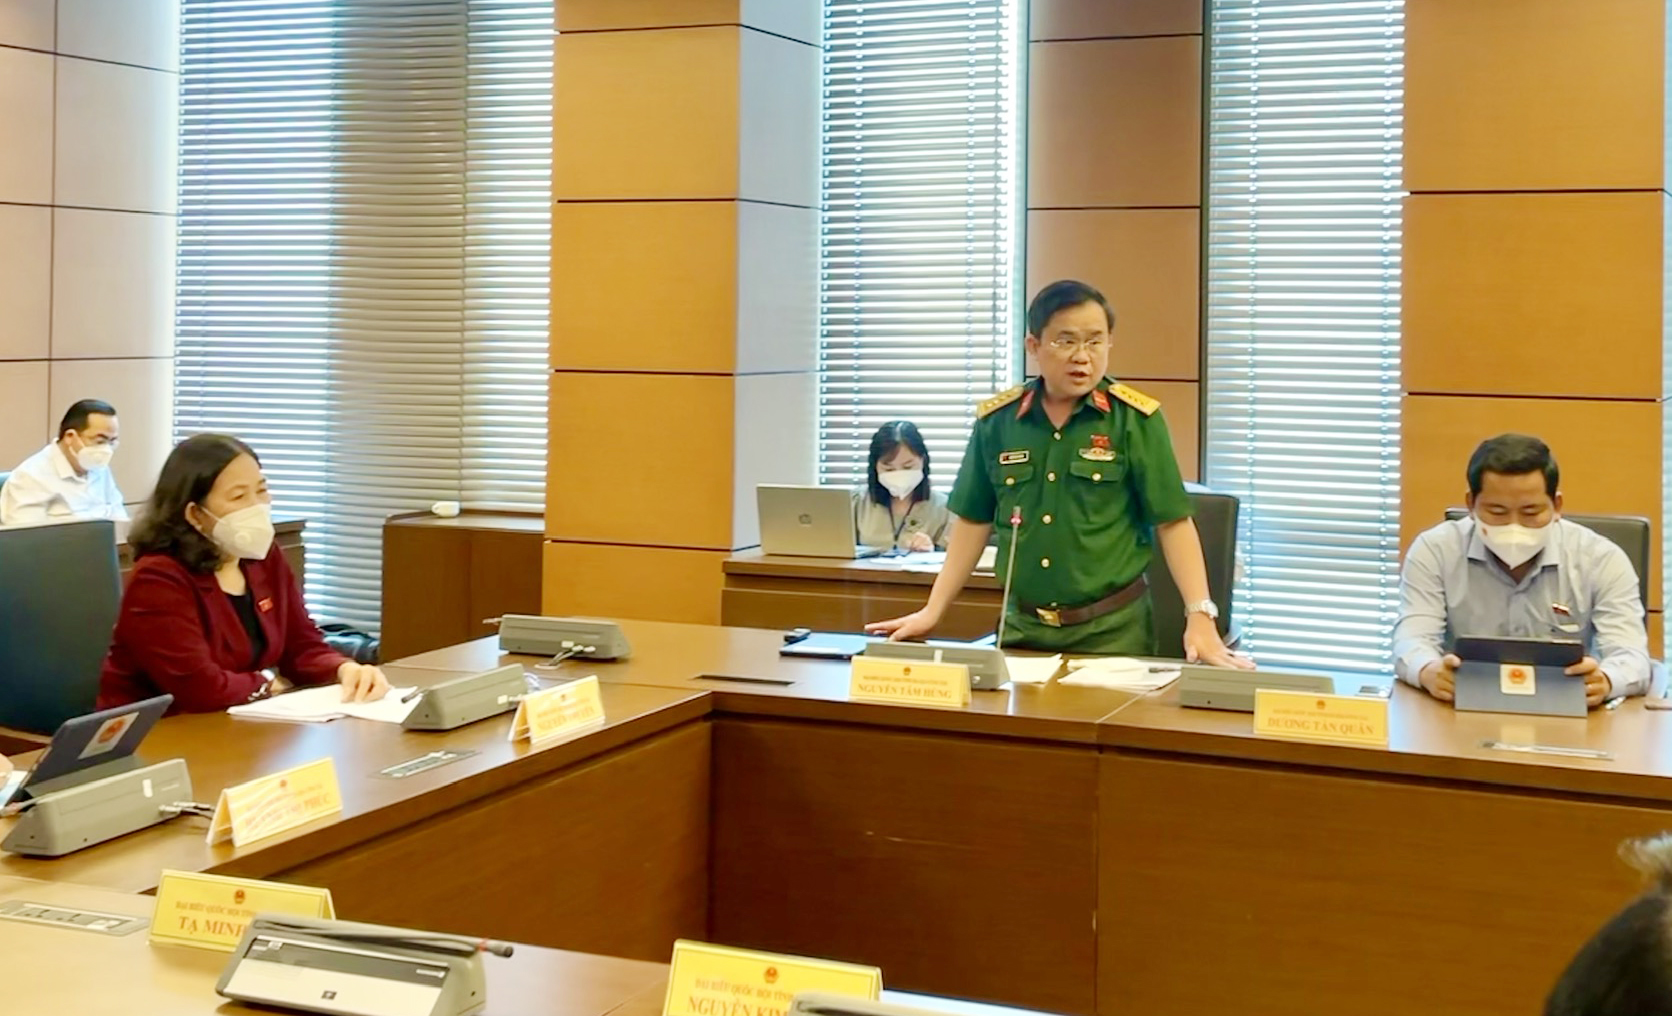 Đại tá Nguyễn Tâm Hùng, Chỉ huy trưởng Bộ CHQS tỉnh phát biểu tại buổi thảo luận tổ về Phê chuẩn quyết toán ngân sách nhà nước năm 2019 và công tác thực hành tiết kiệm, chống lãng phí năm 2020. Ảnh: CHÂU VŨ.